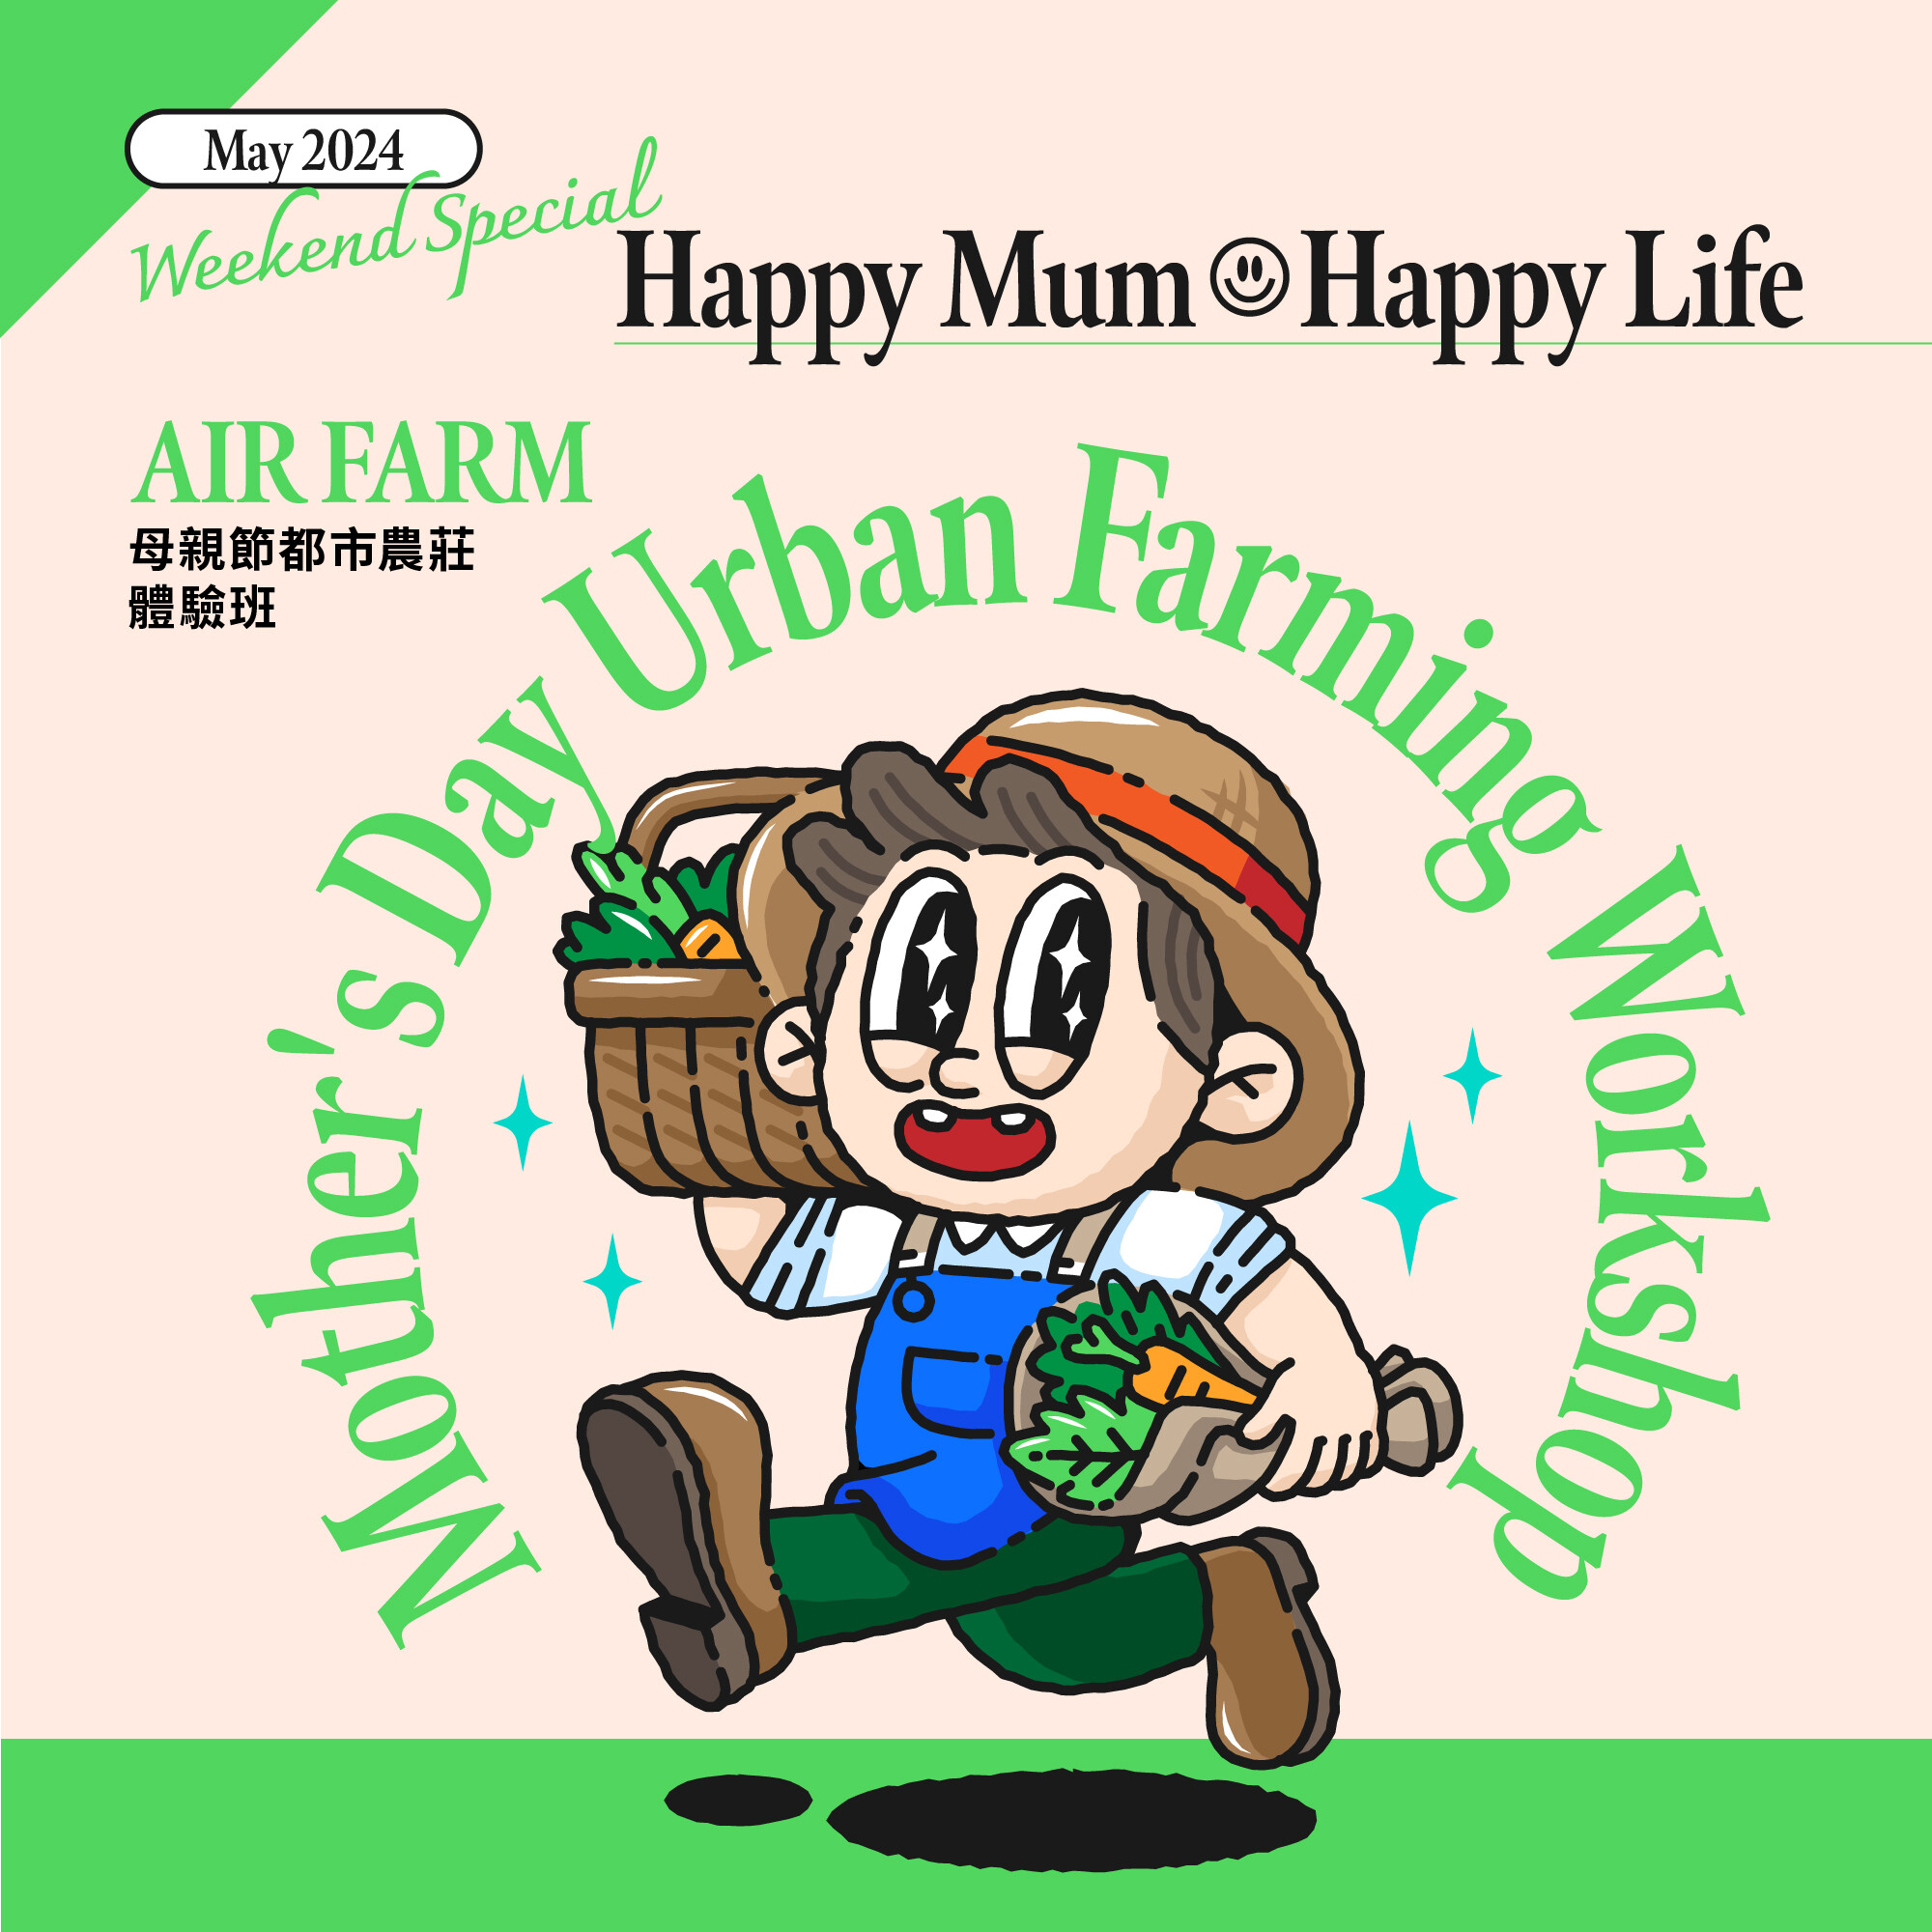 AIR FARM 空中农庄: 母亲节都市农庄体验班